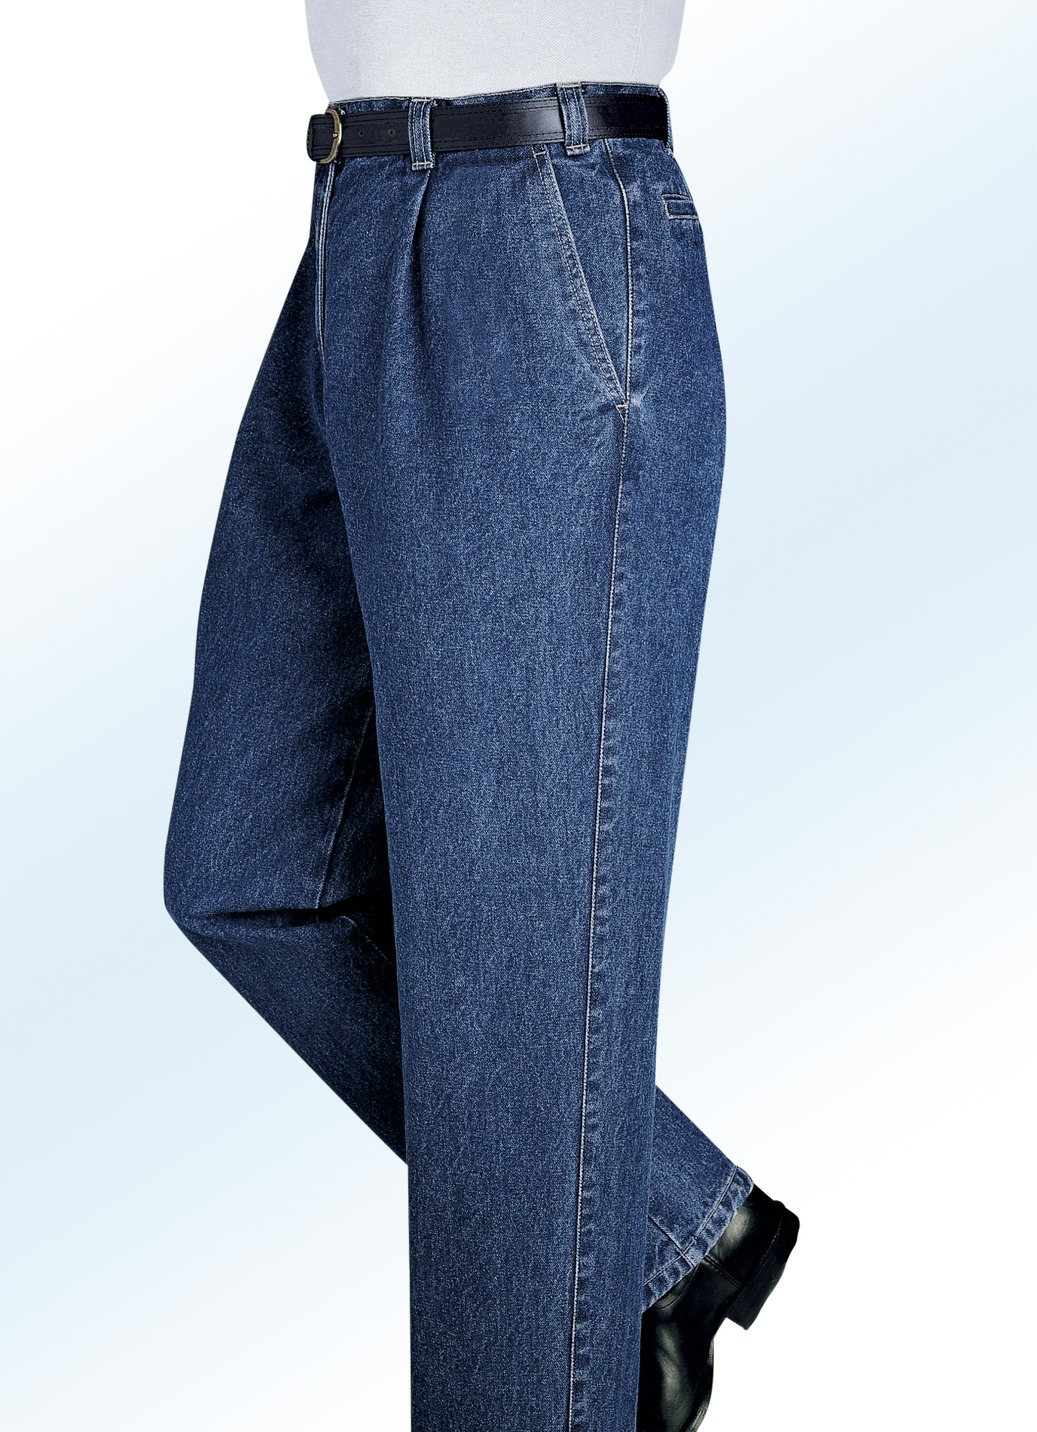 "Francesco Botti"-Jeans in 2 Qualitäten und 3 Farben, Qualität 2. Qualität, Jeansblau, Größe 24 von FRANCESCO BOTTI